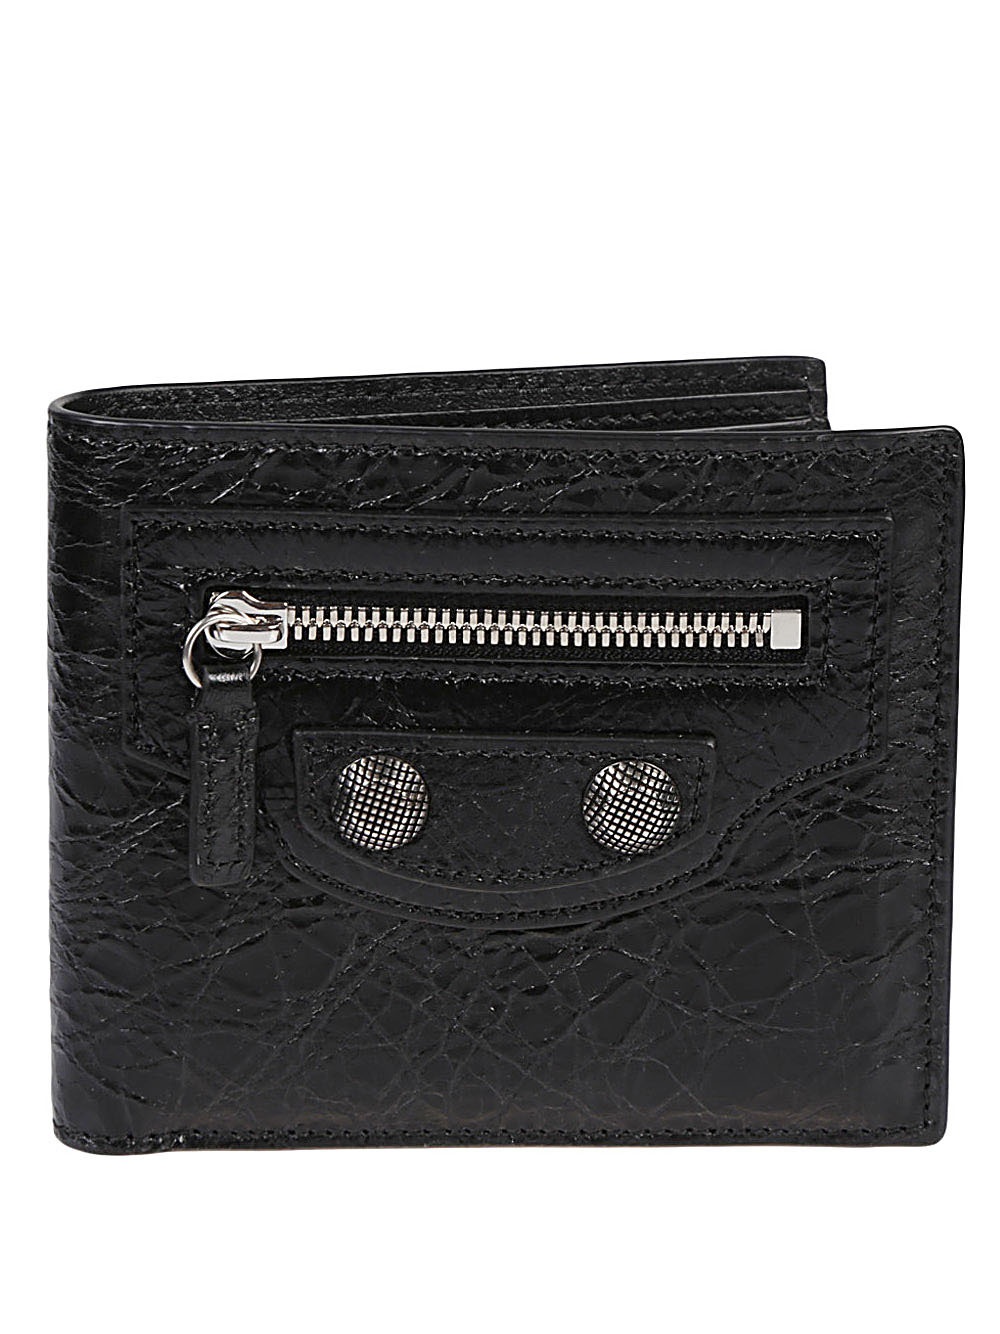 Photo: BALENCIAGA - Leather Wallet